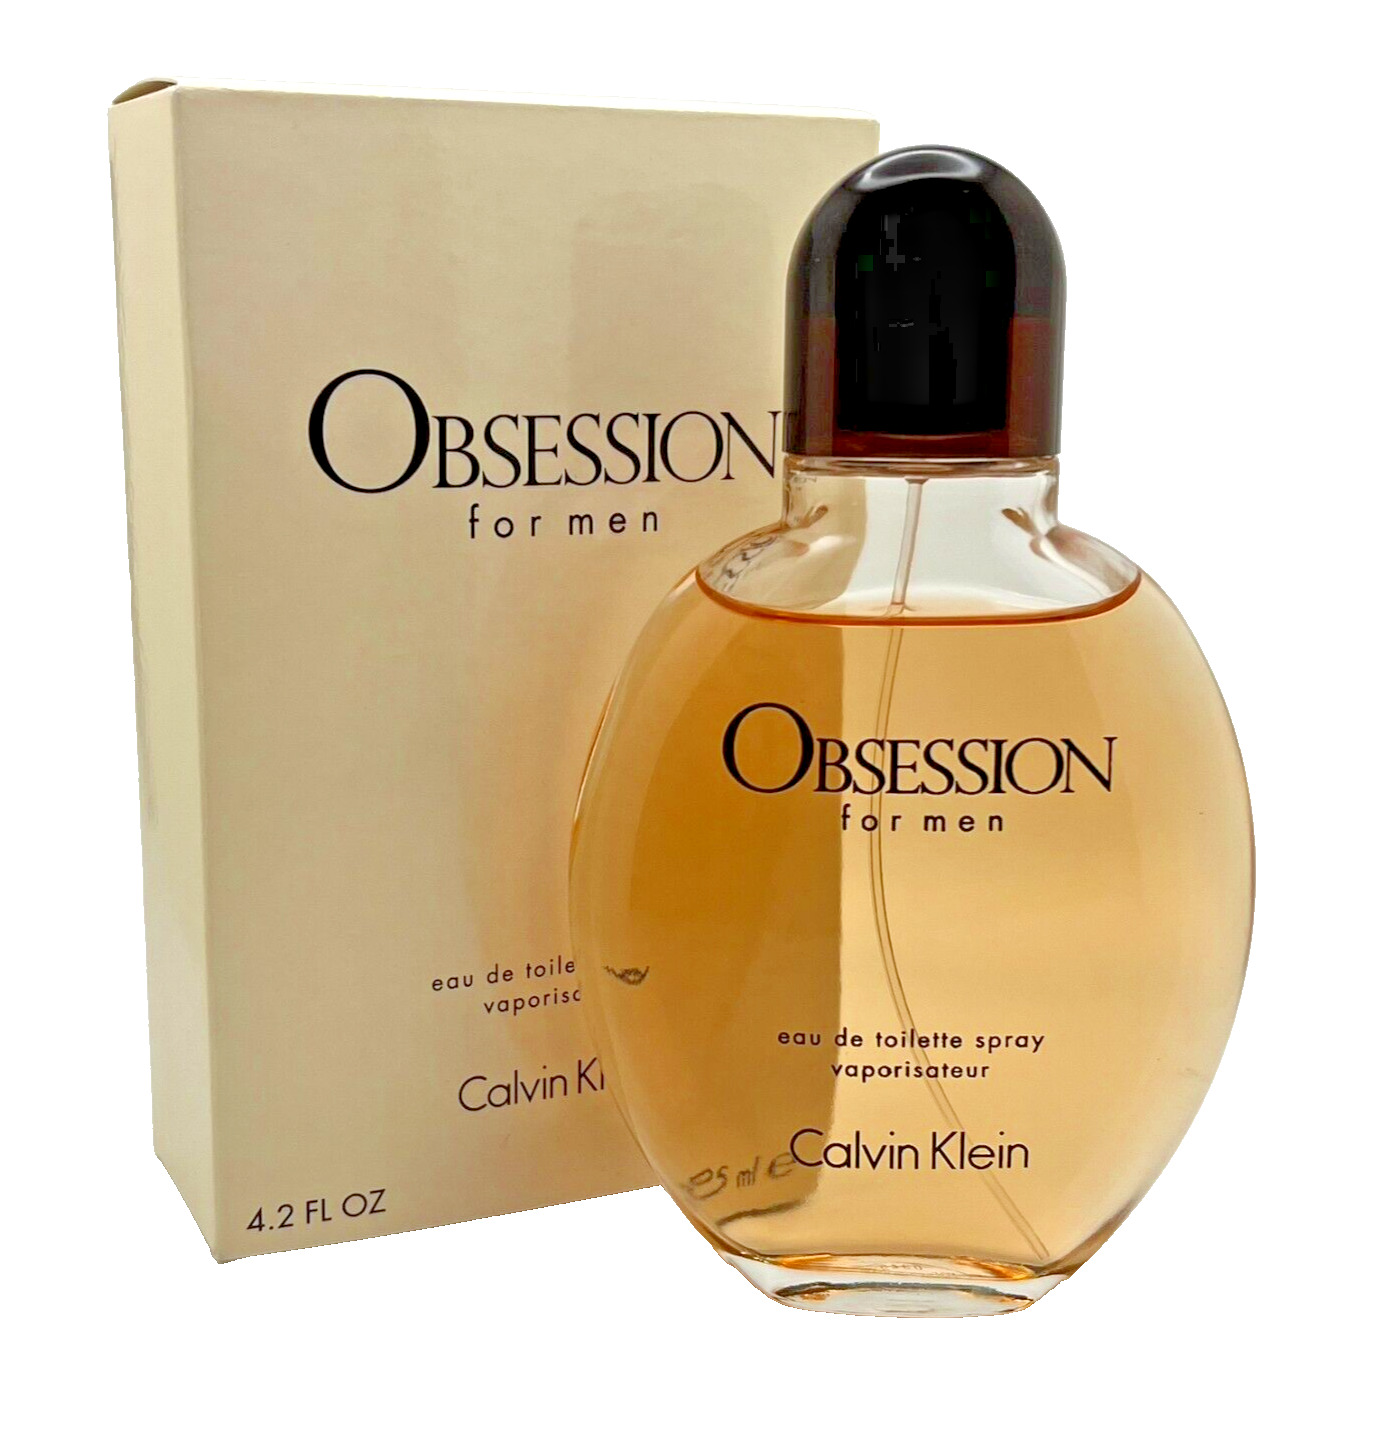 Calvin Klein Obsession For Men 4.2 oz EDT Fragrance Cologne Spray